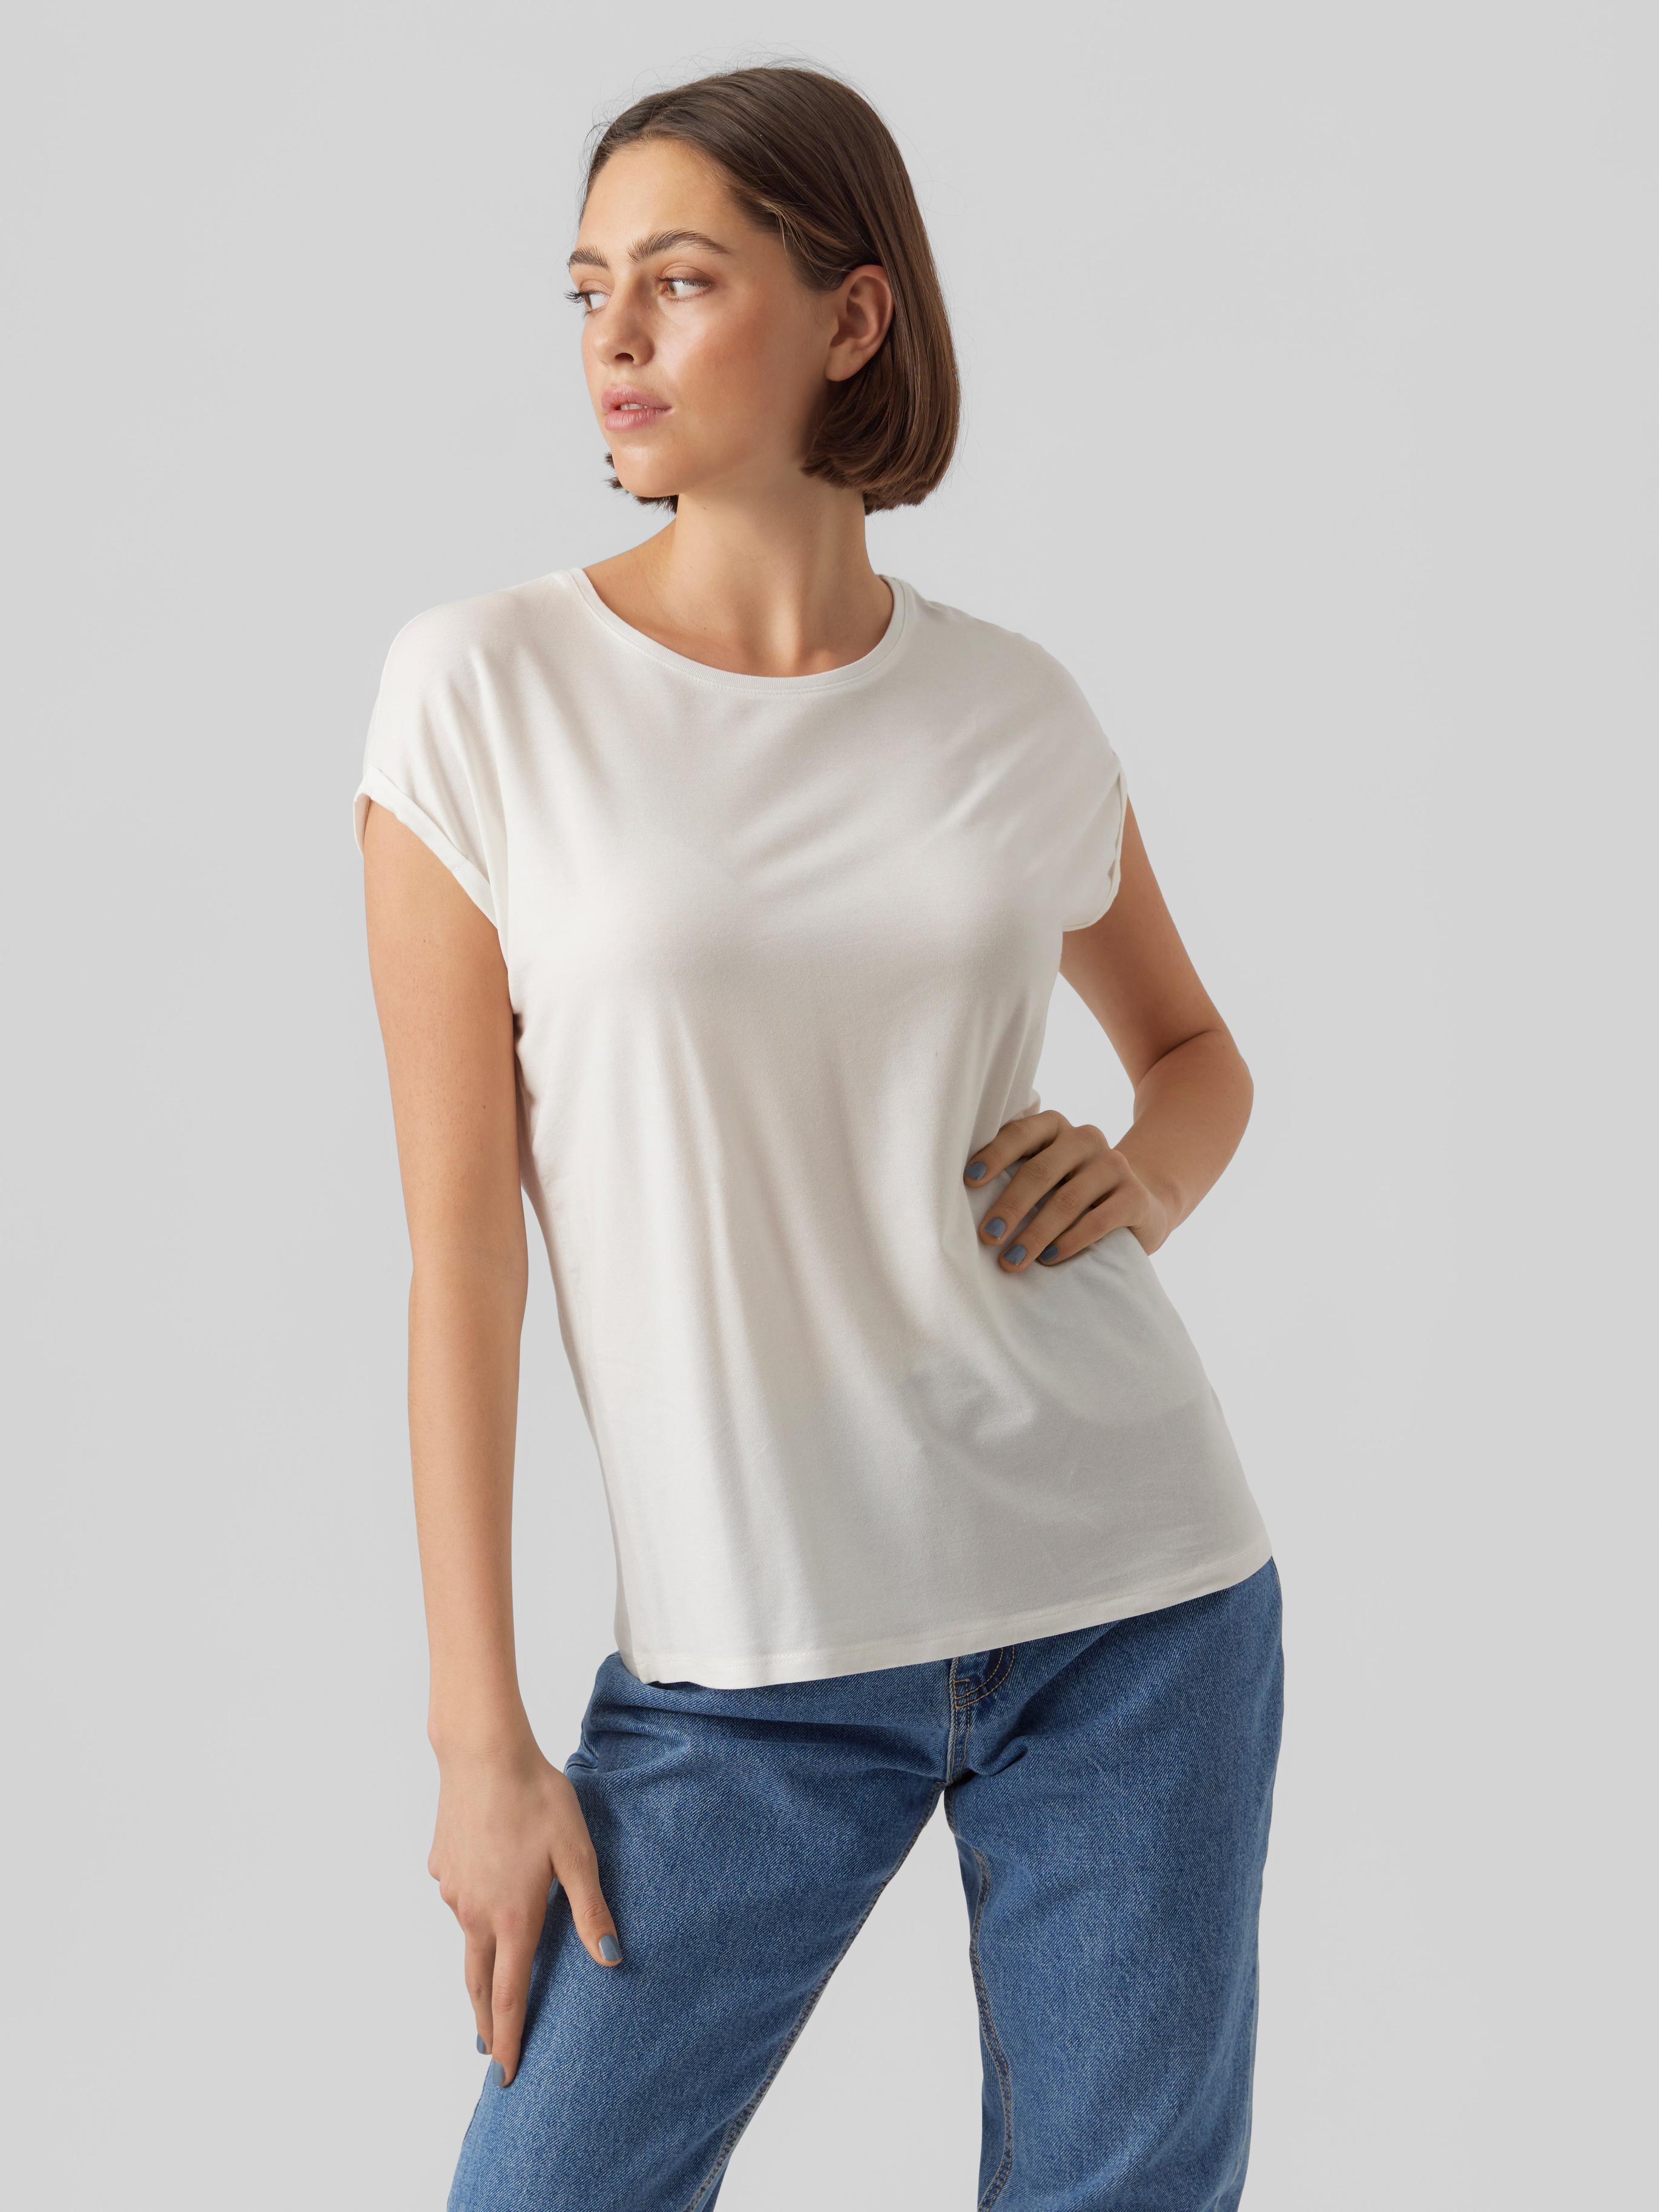 VMAVA T-Shirt für 16,99€ in Vero Moda